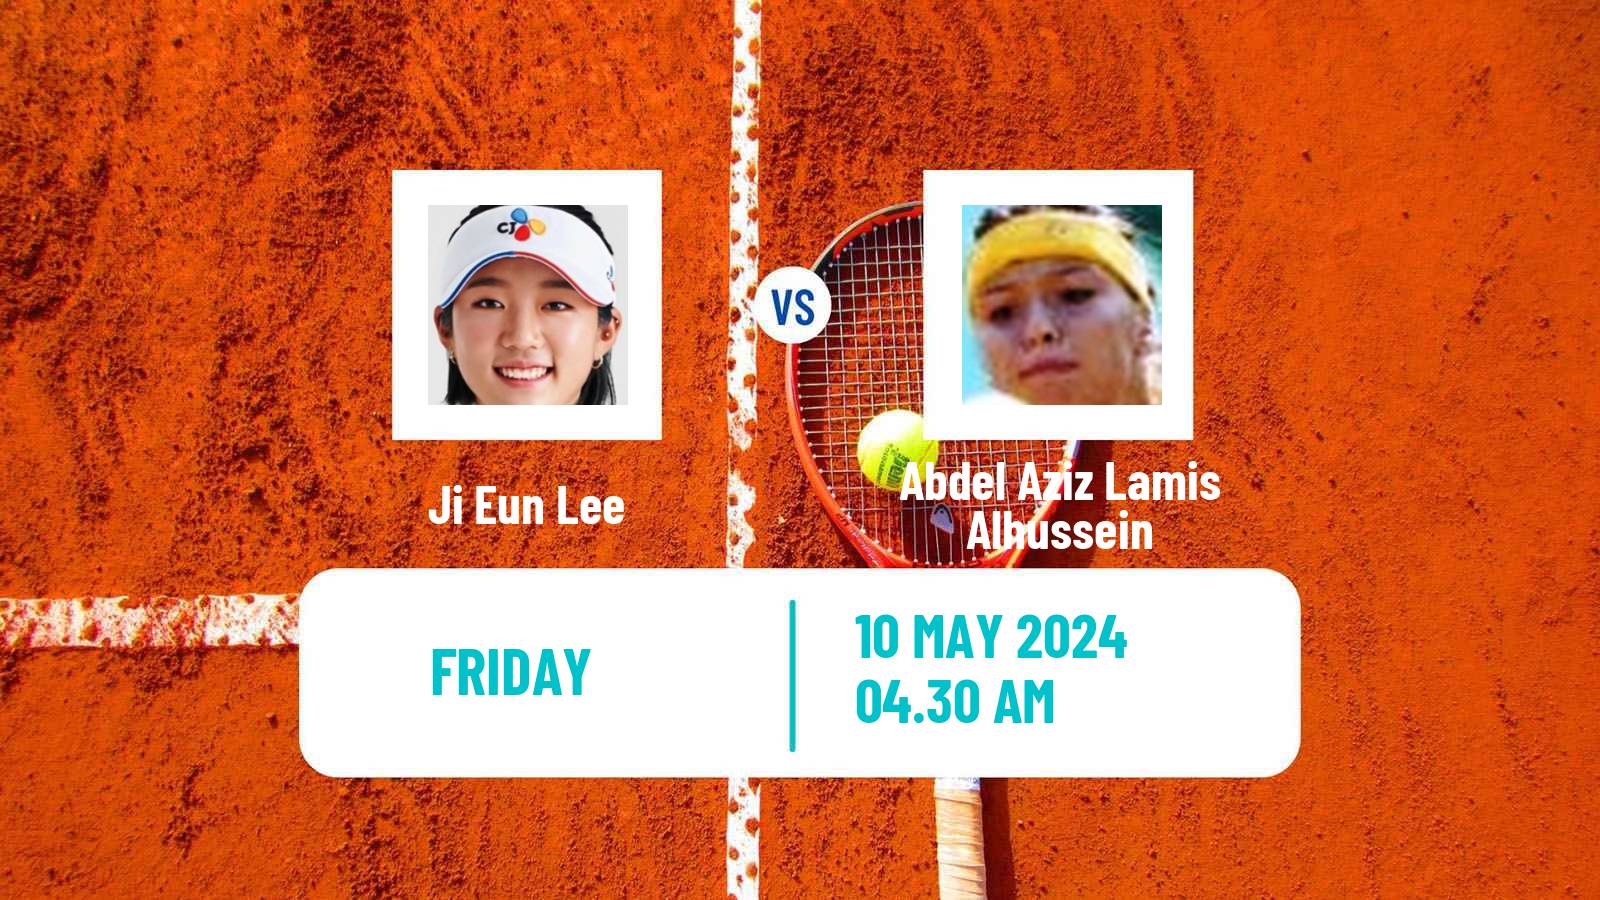 Tennis ITF W15 Monastir 17 Women Ji Eun Lee - Abdel Aziz Lamis Alhussein